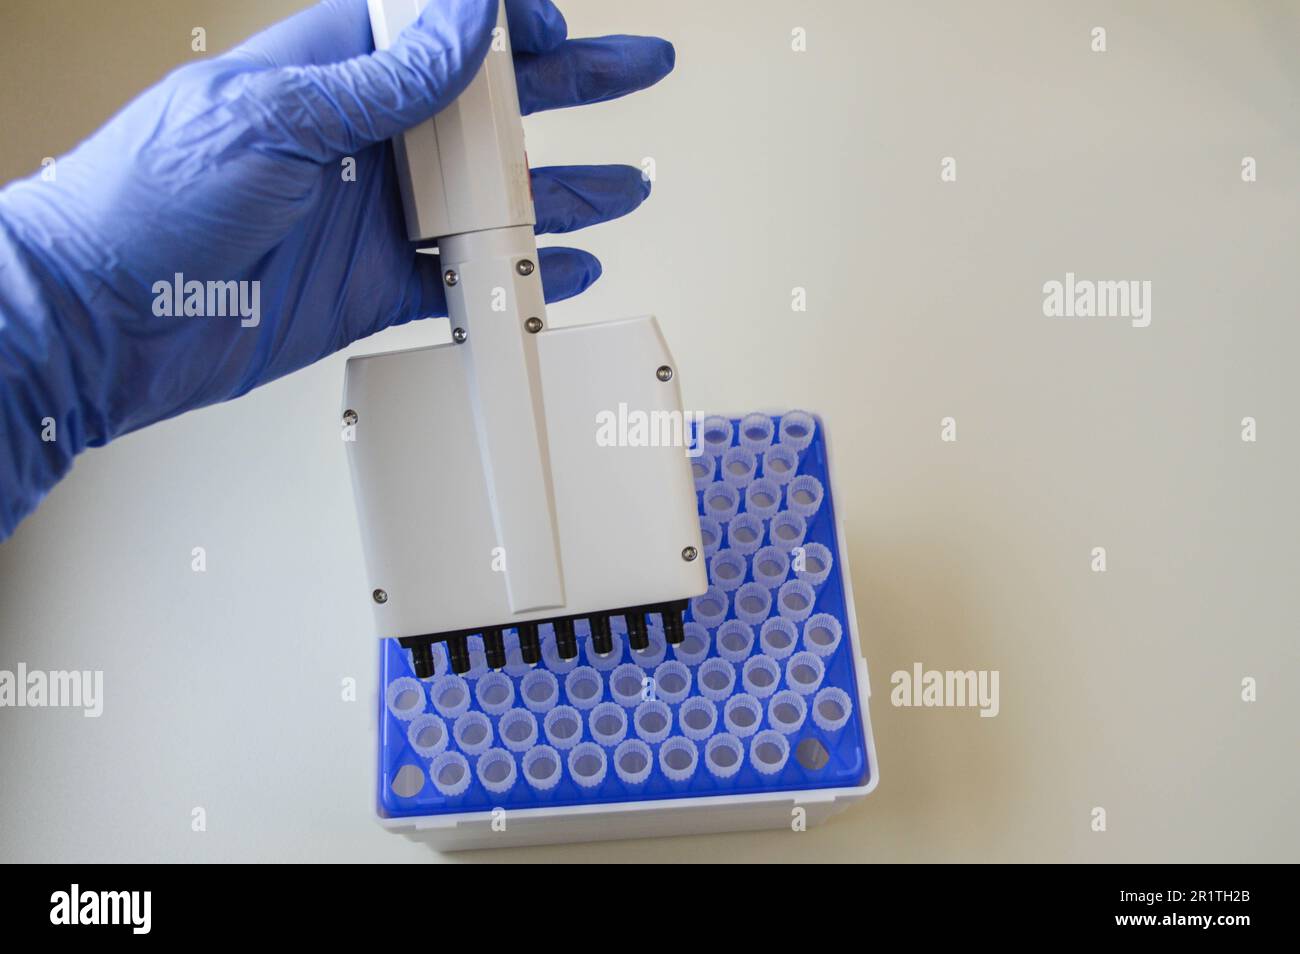 Technikerin im Labor für Genetik - Reprogenetik. Junger Techniker verwendet Dispenser zum Pipettieren von PCR-Streifen. Stockfoto